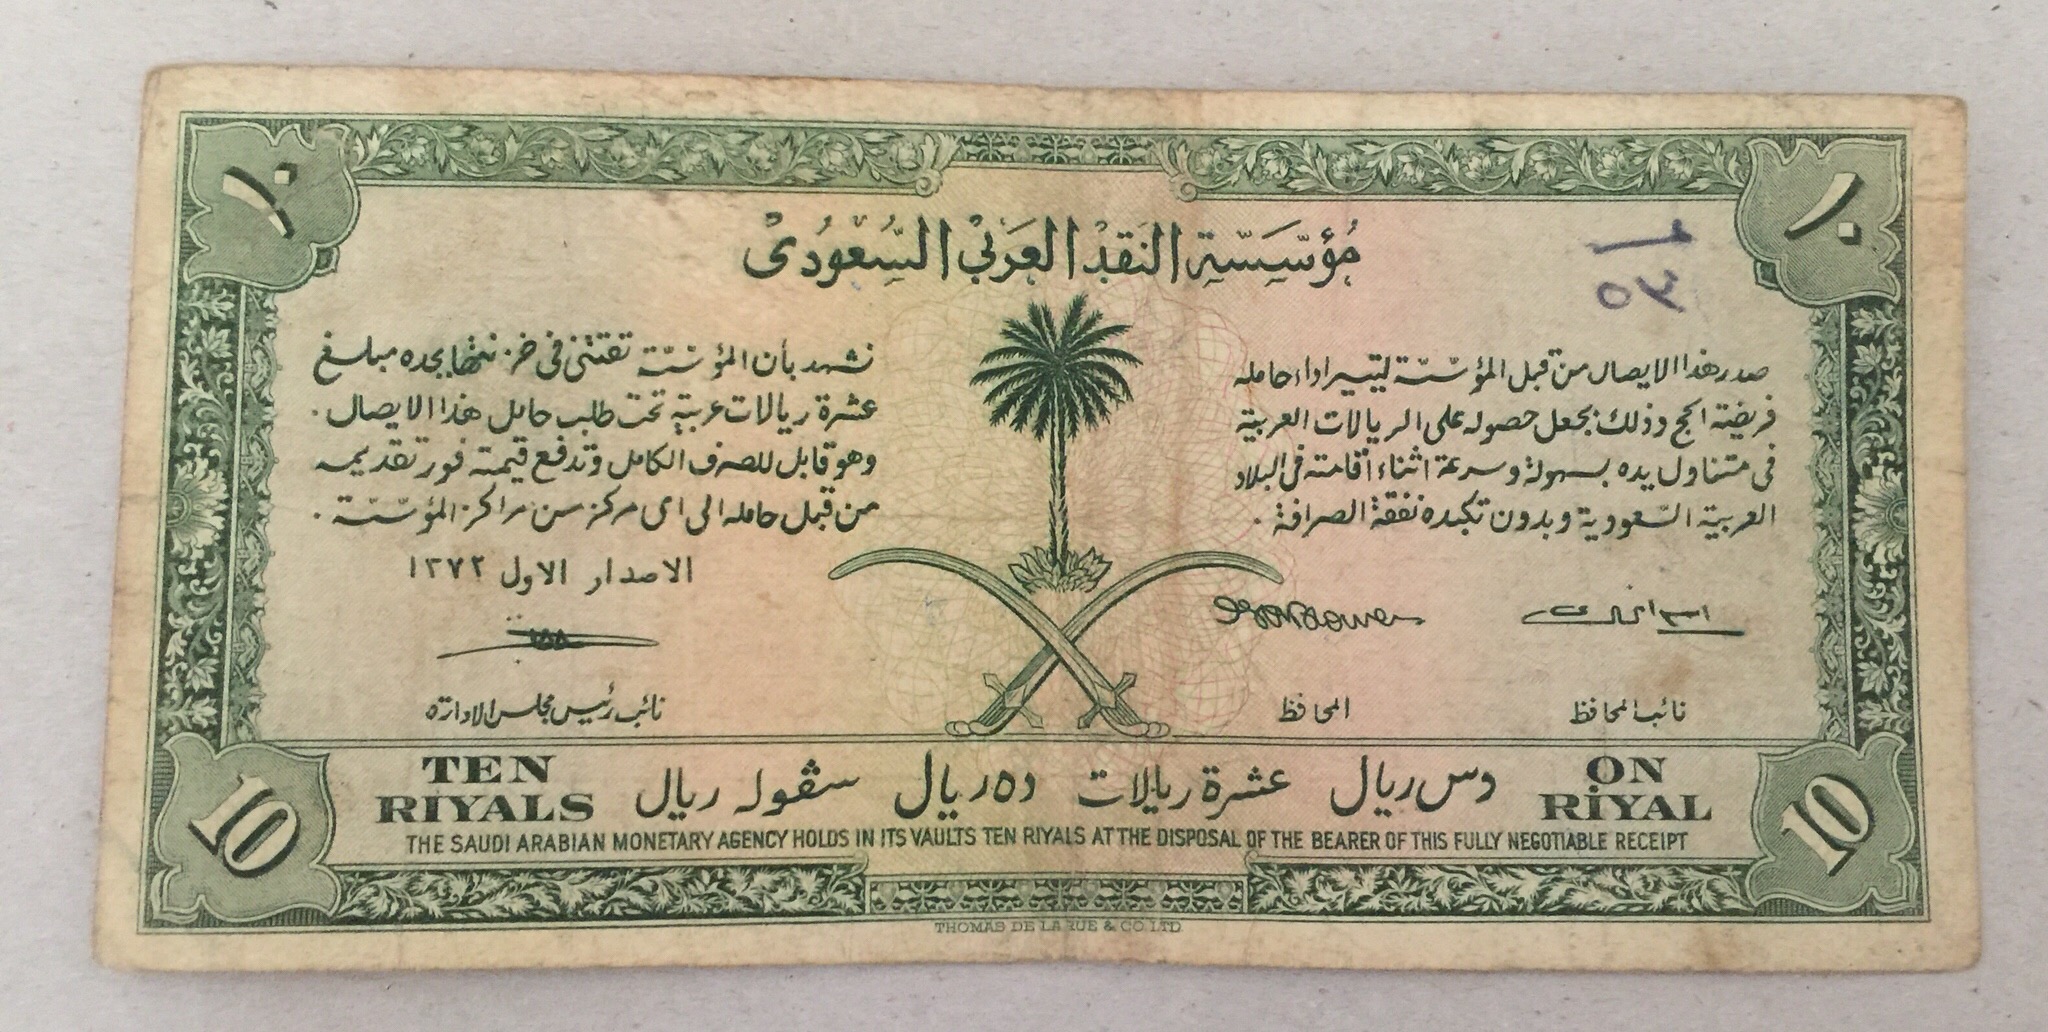 1372 AH 1953 Saudi Arabia 10 Riyal Banknote Haj Hajj Pilgrim Receipt First Issue المملكة العربية السعودية عشرة ريال ابيض وصل الحج سنة ١٩٥٣